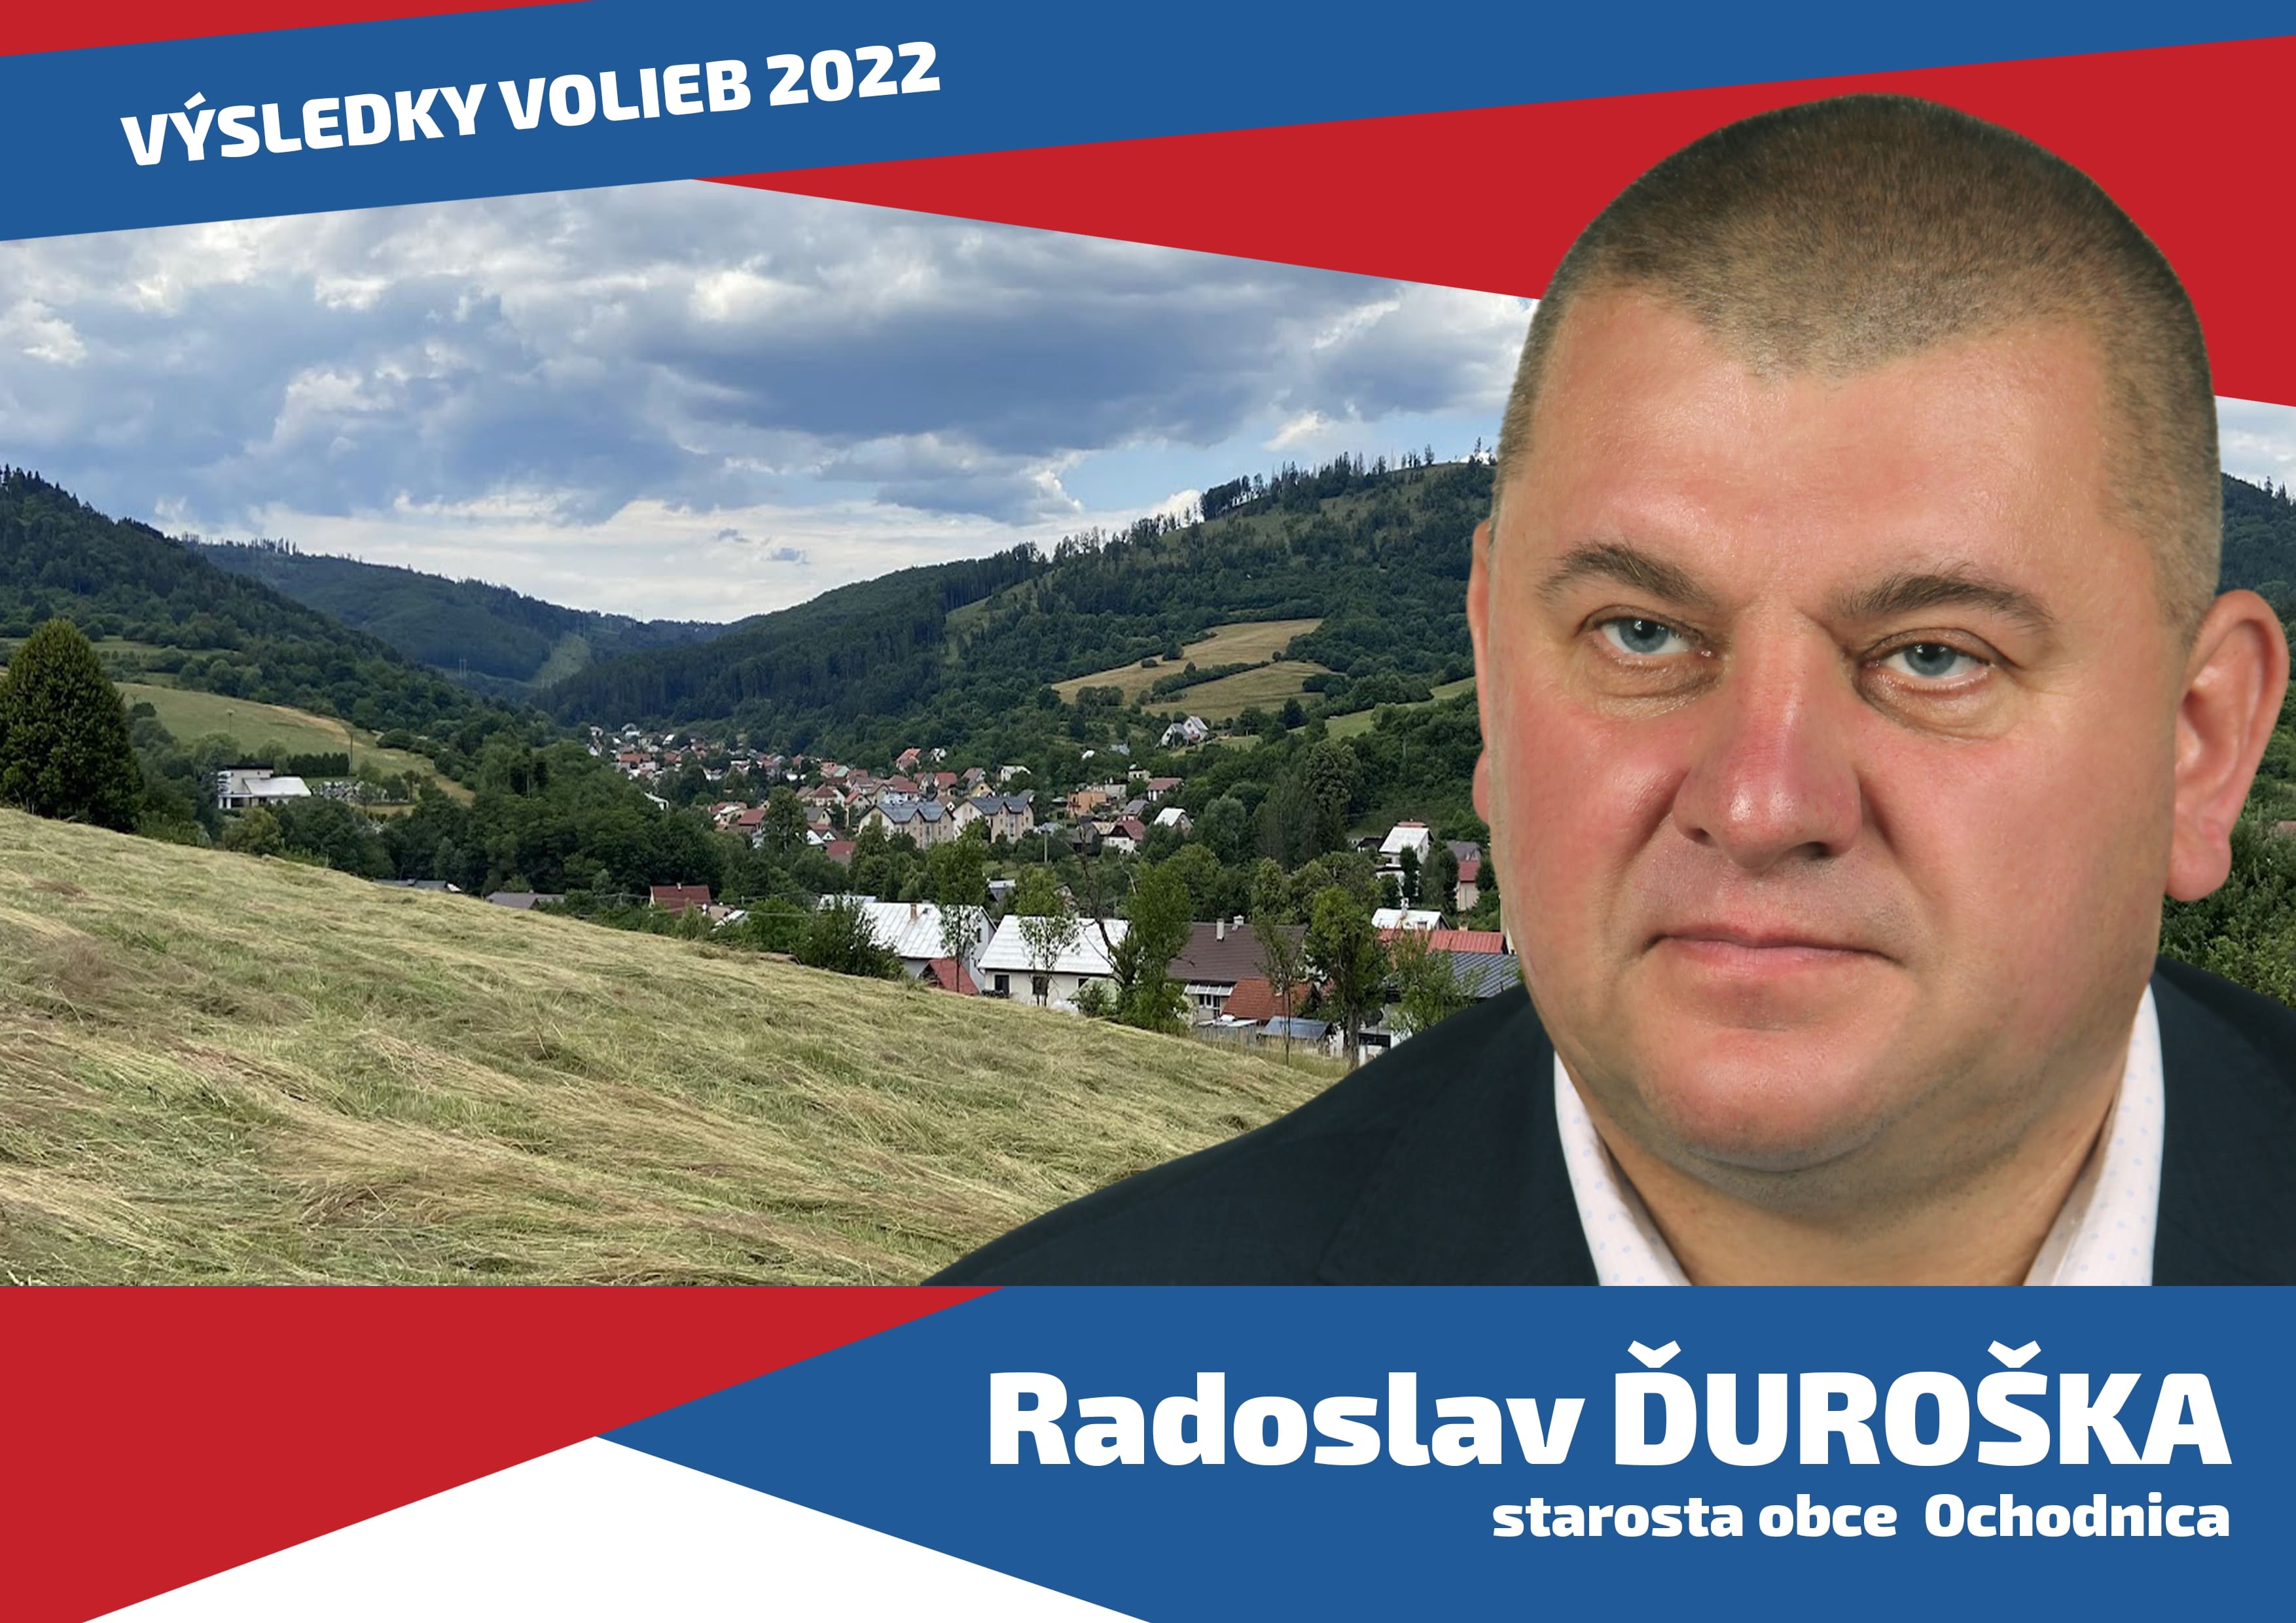 Radoslav Ďuroška starosta obce